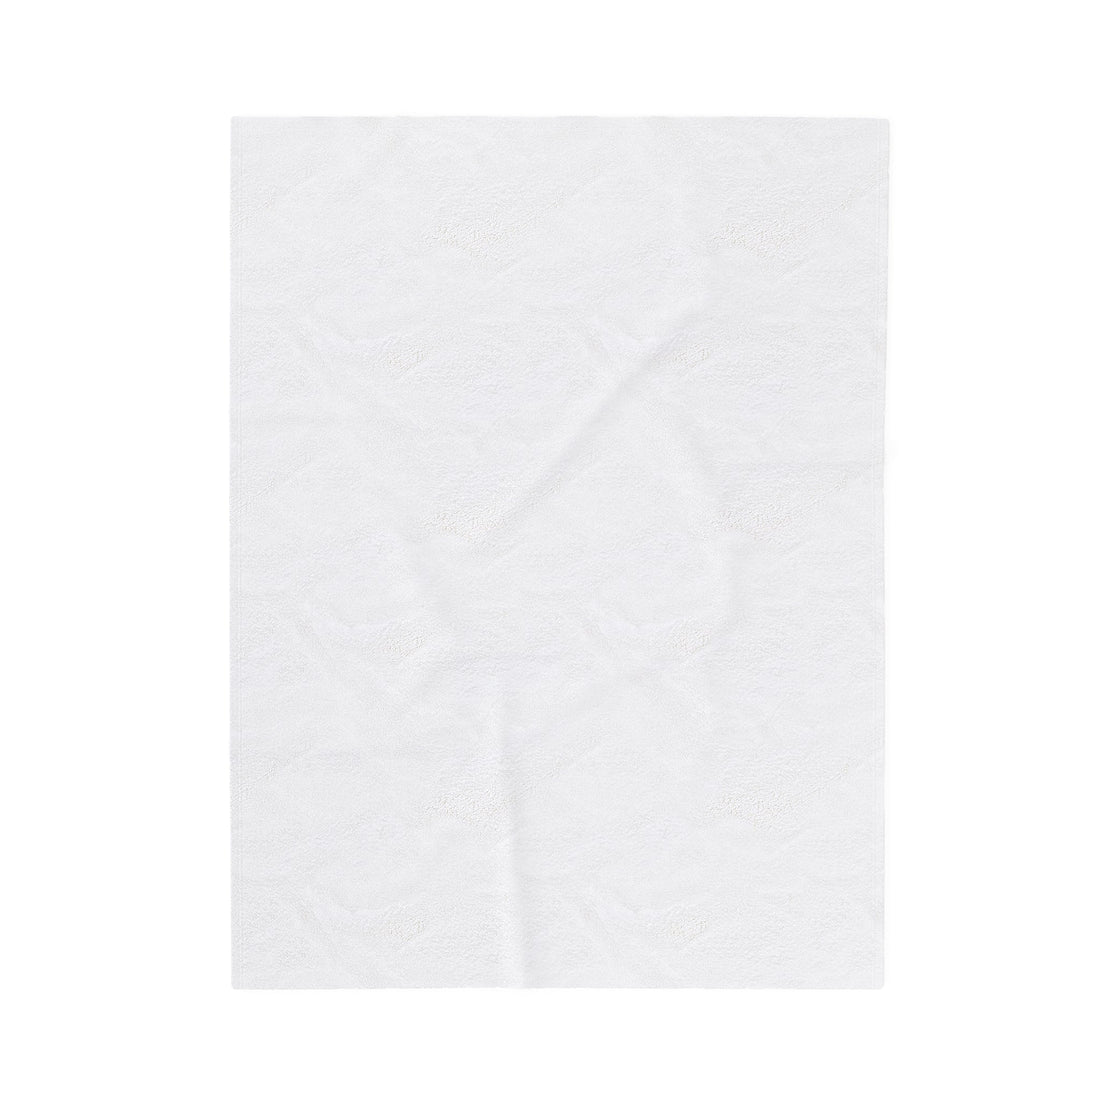 Cougar Pride Velveteen Plush Blanket - All Over Prints - Positively Sassy - Cougar Pride Velveteen Plush Blanket